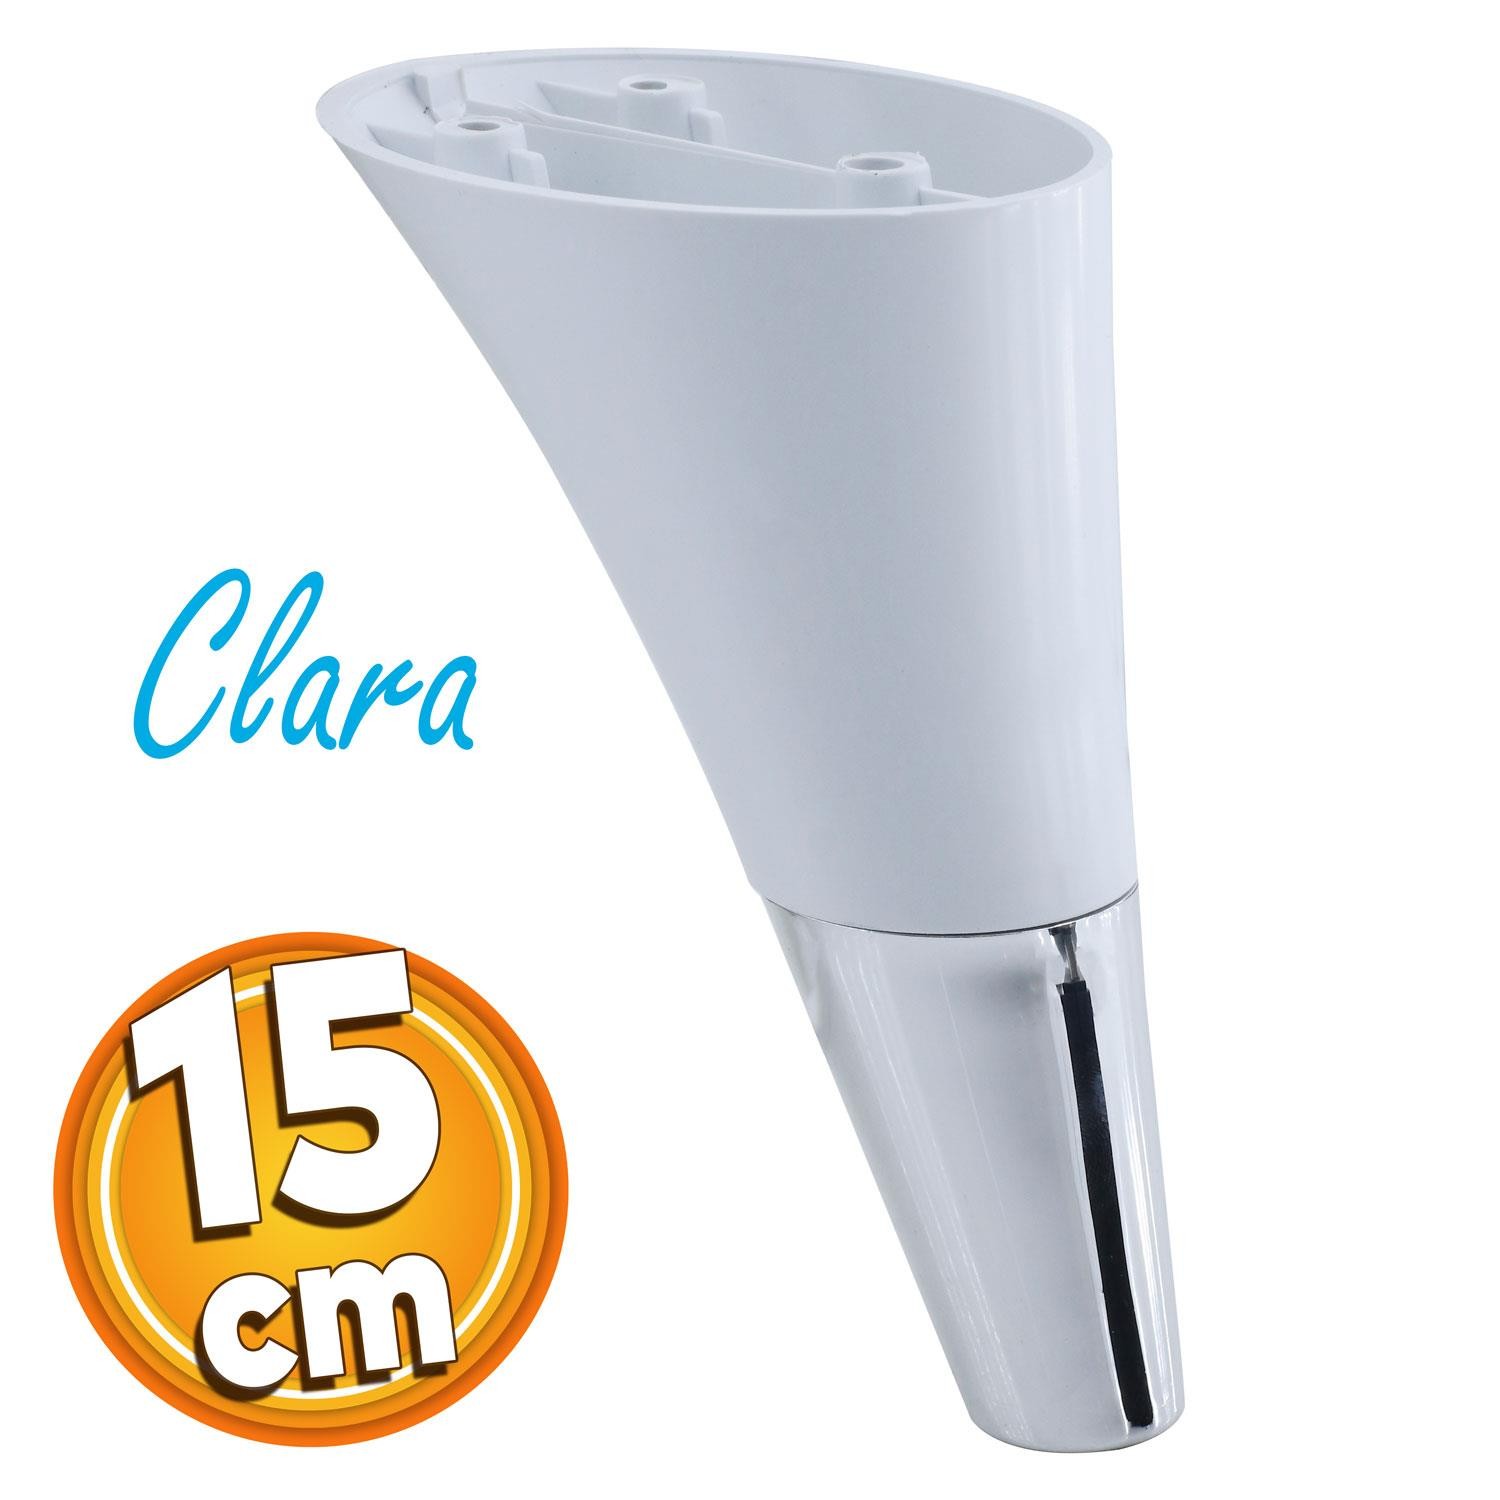 Clara Mobilya Kanepe Sehpa TV Ünitesi Baza Koltuk Ayağı Beyaz Renk 15 cm Ayak